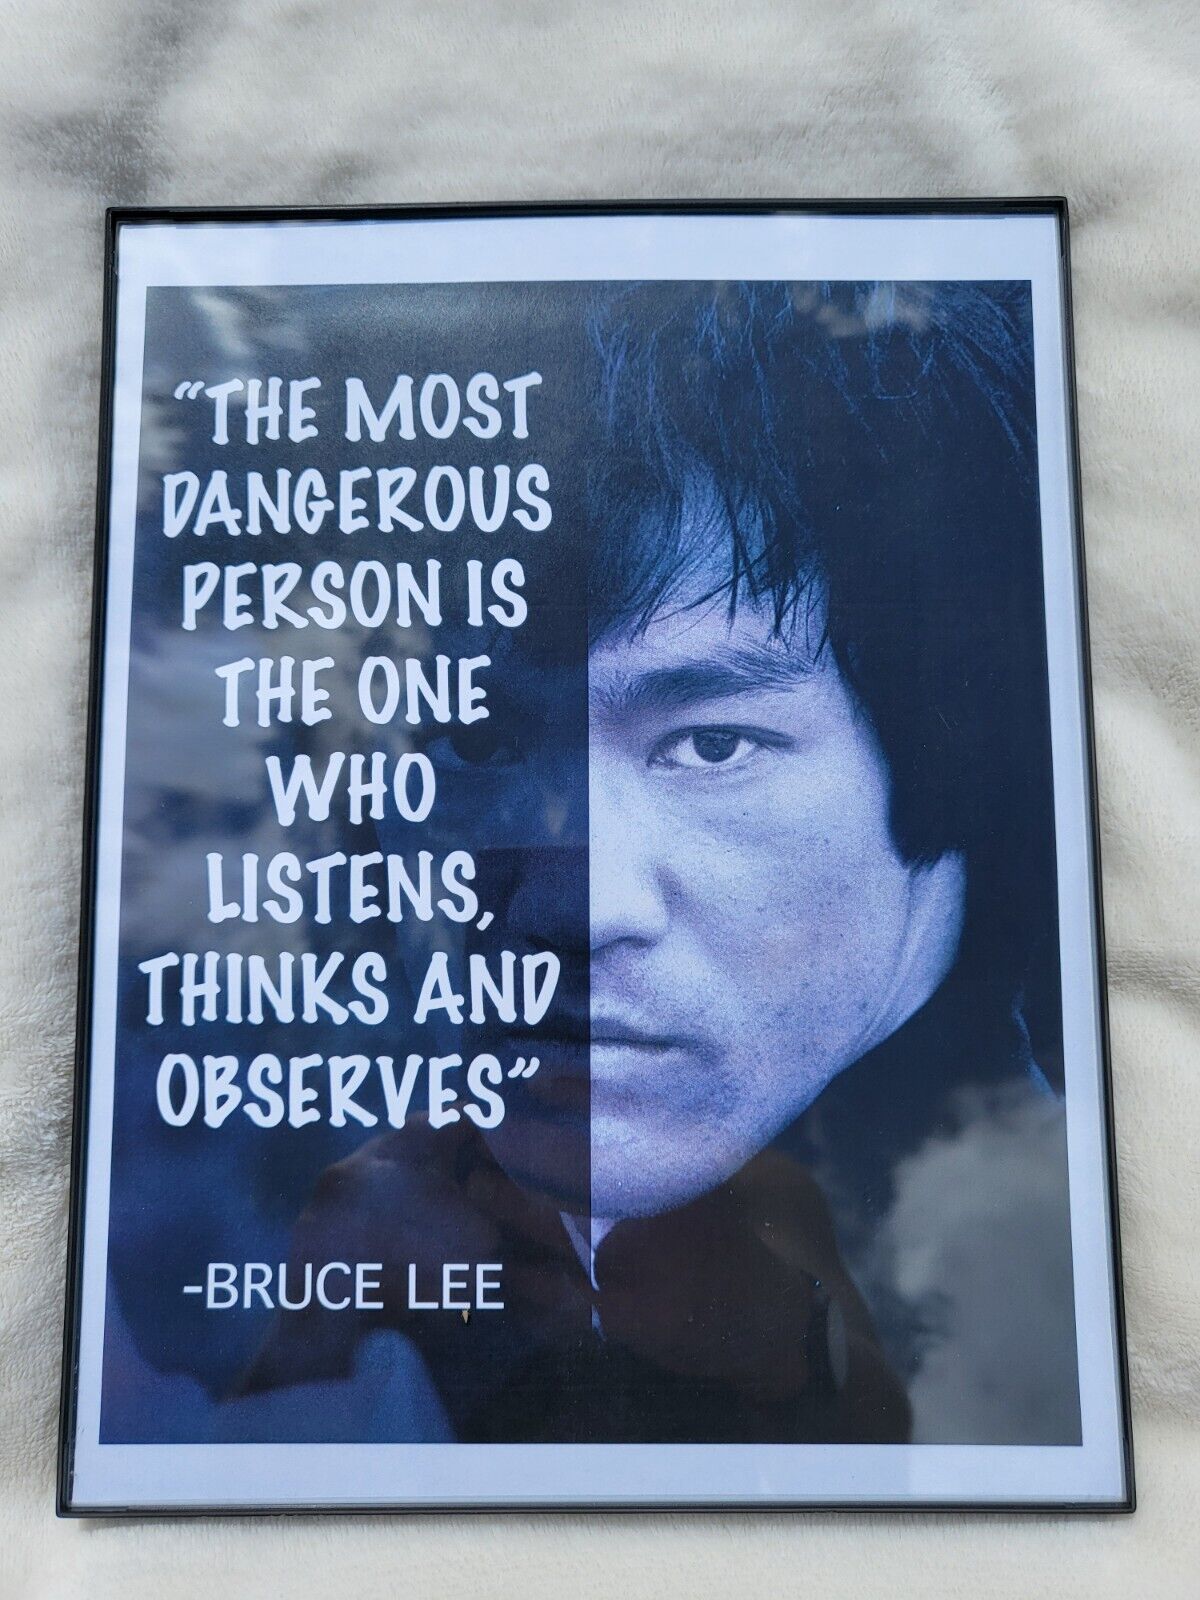 Bruce Lee-Master Martial Artist, Actor, Motivator Framed Picture Photo